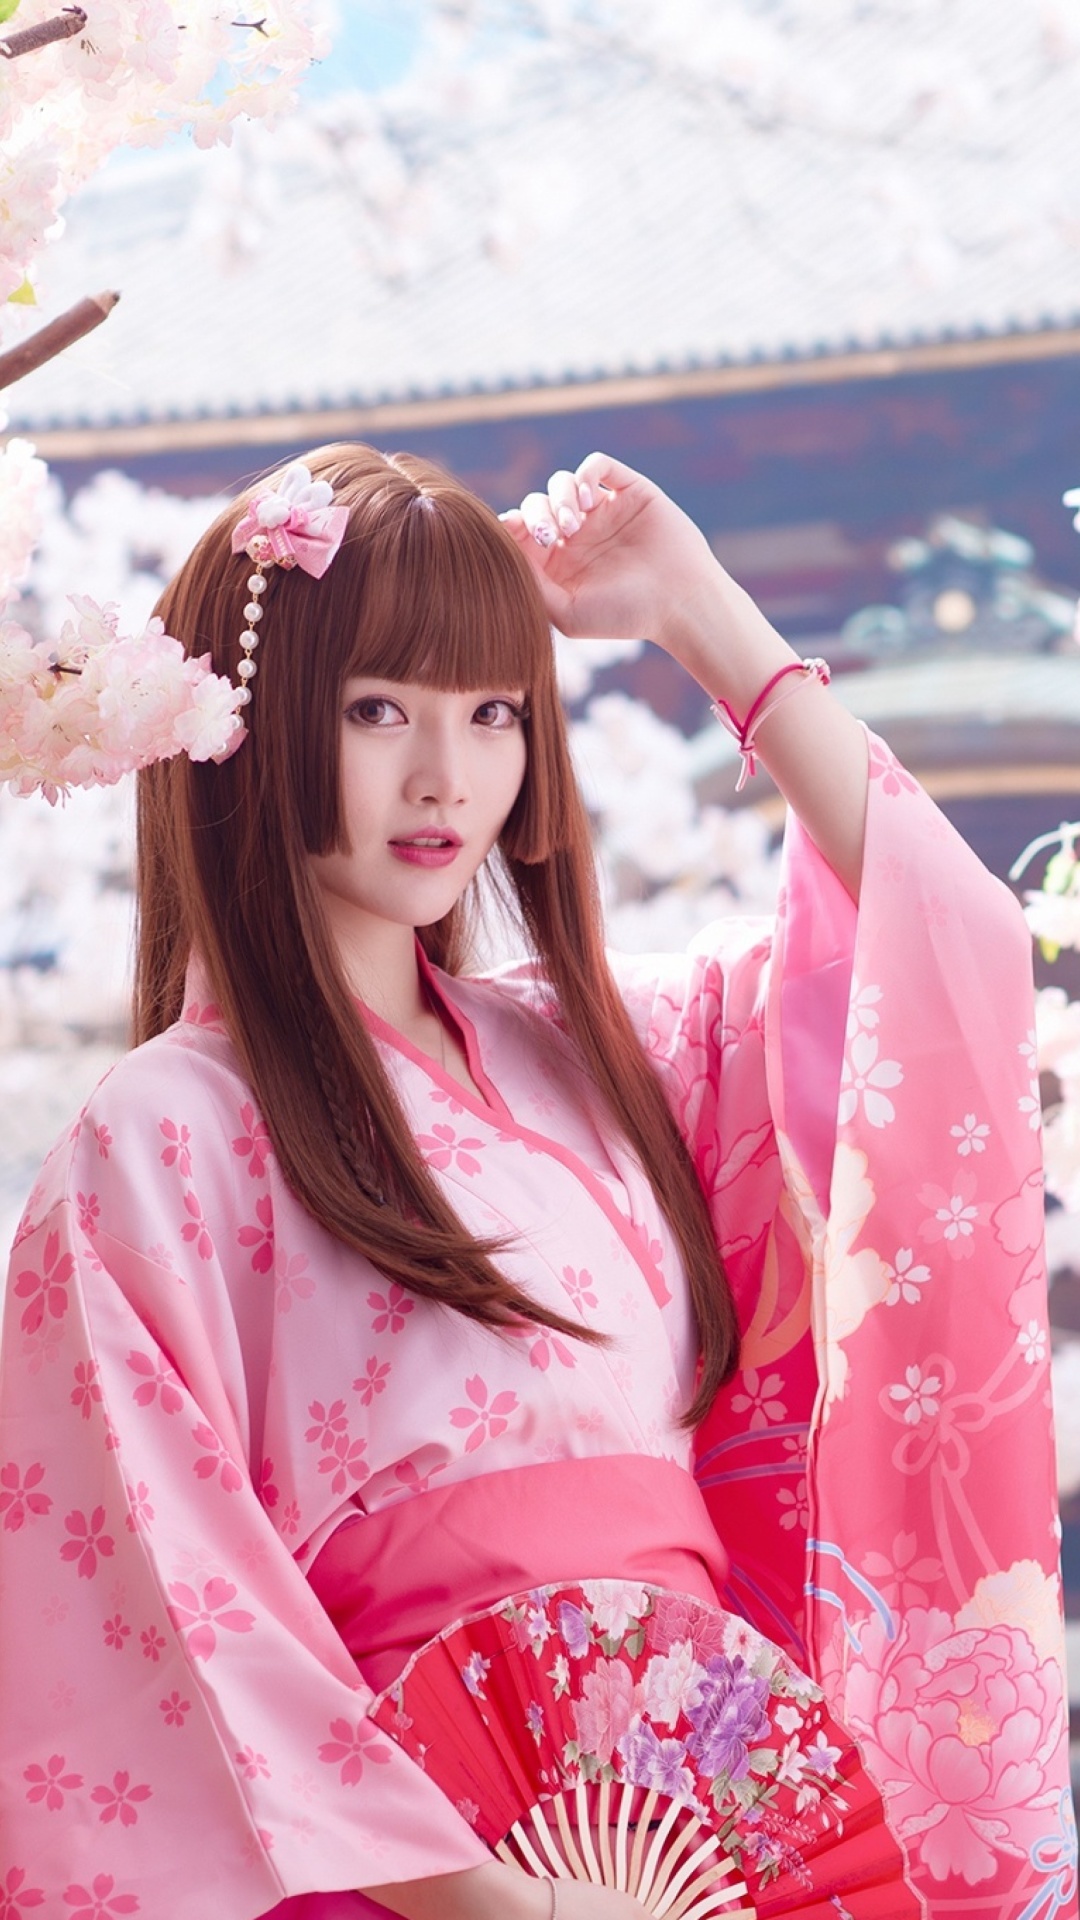 Japanese Girl in Kimono wallpaper 1080x1920